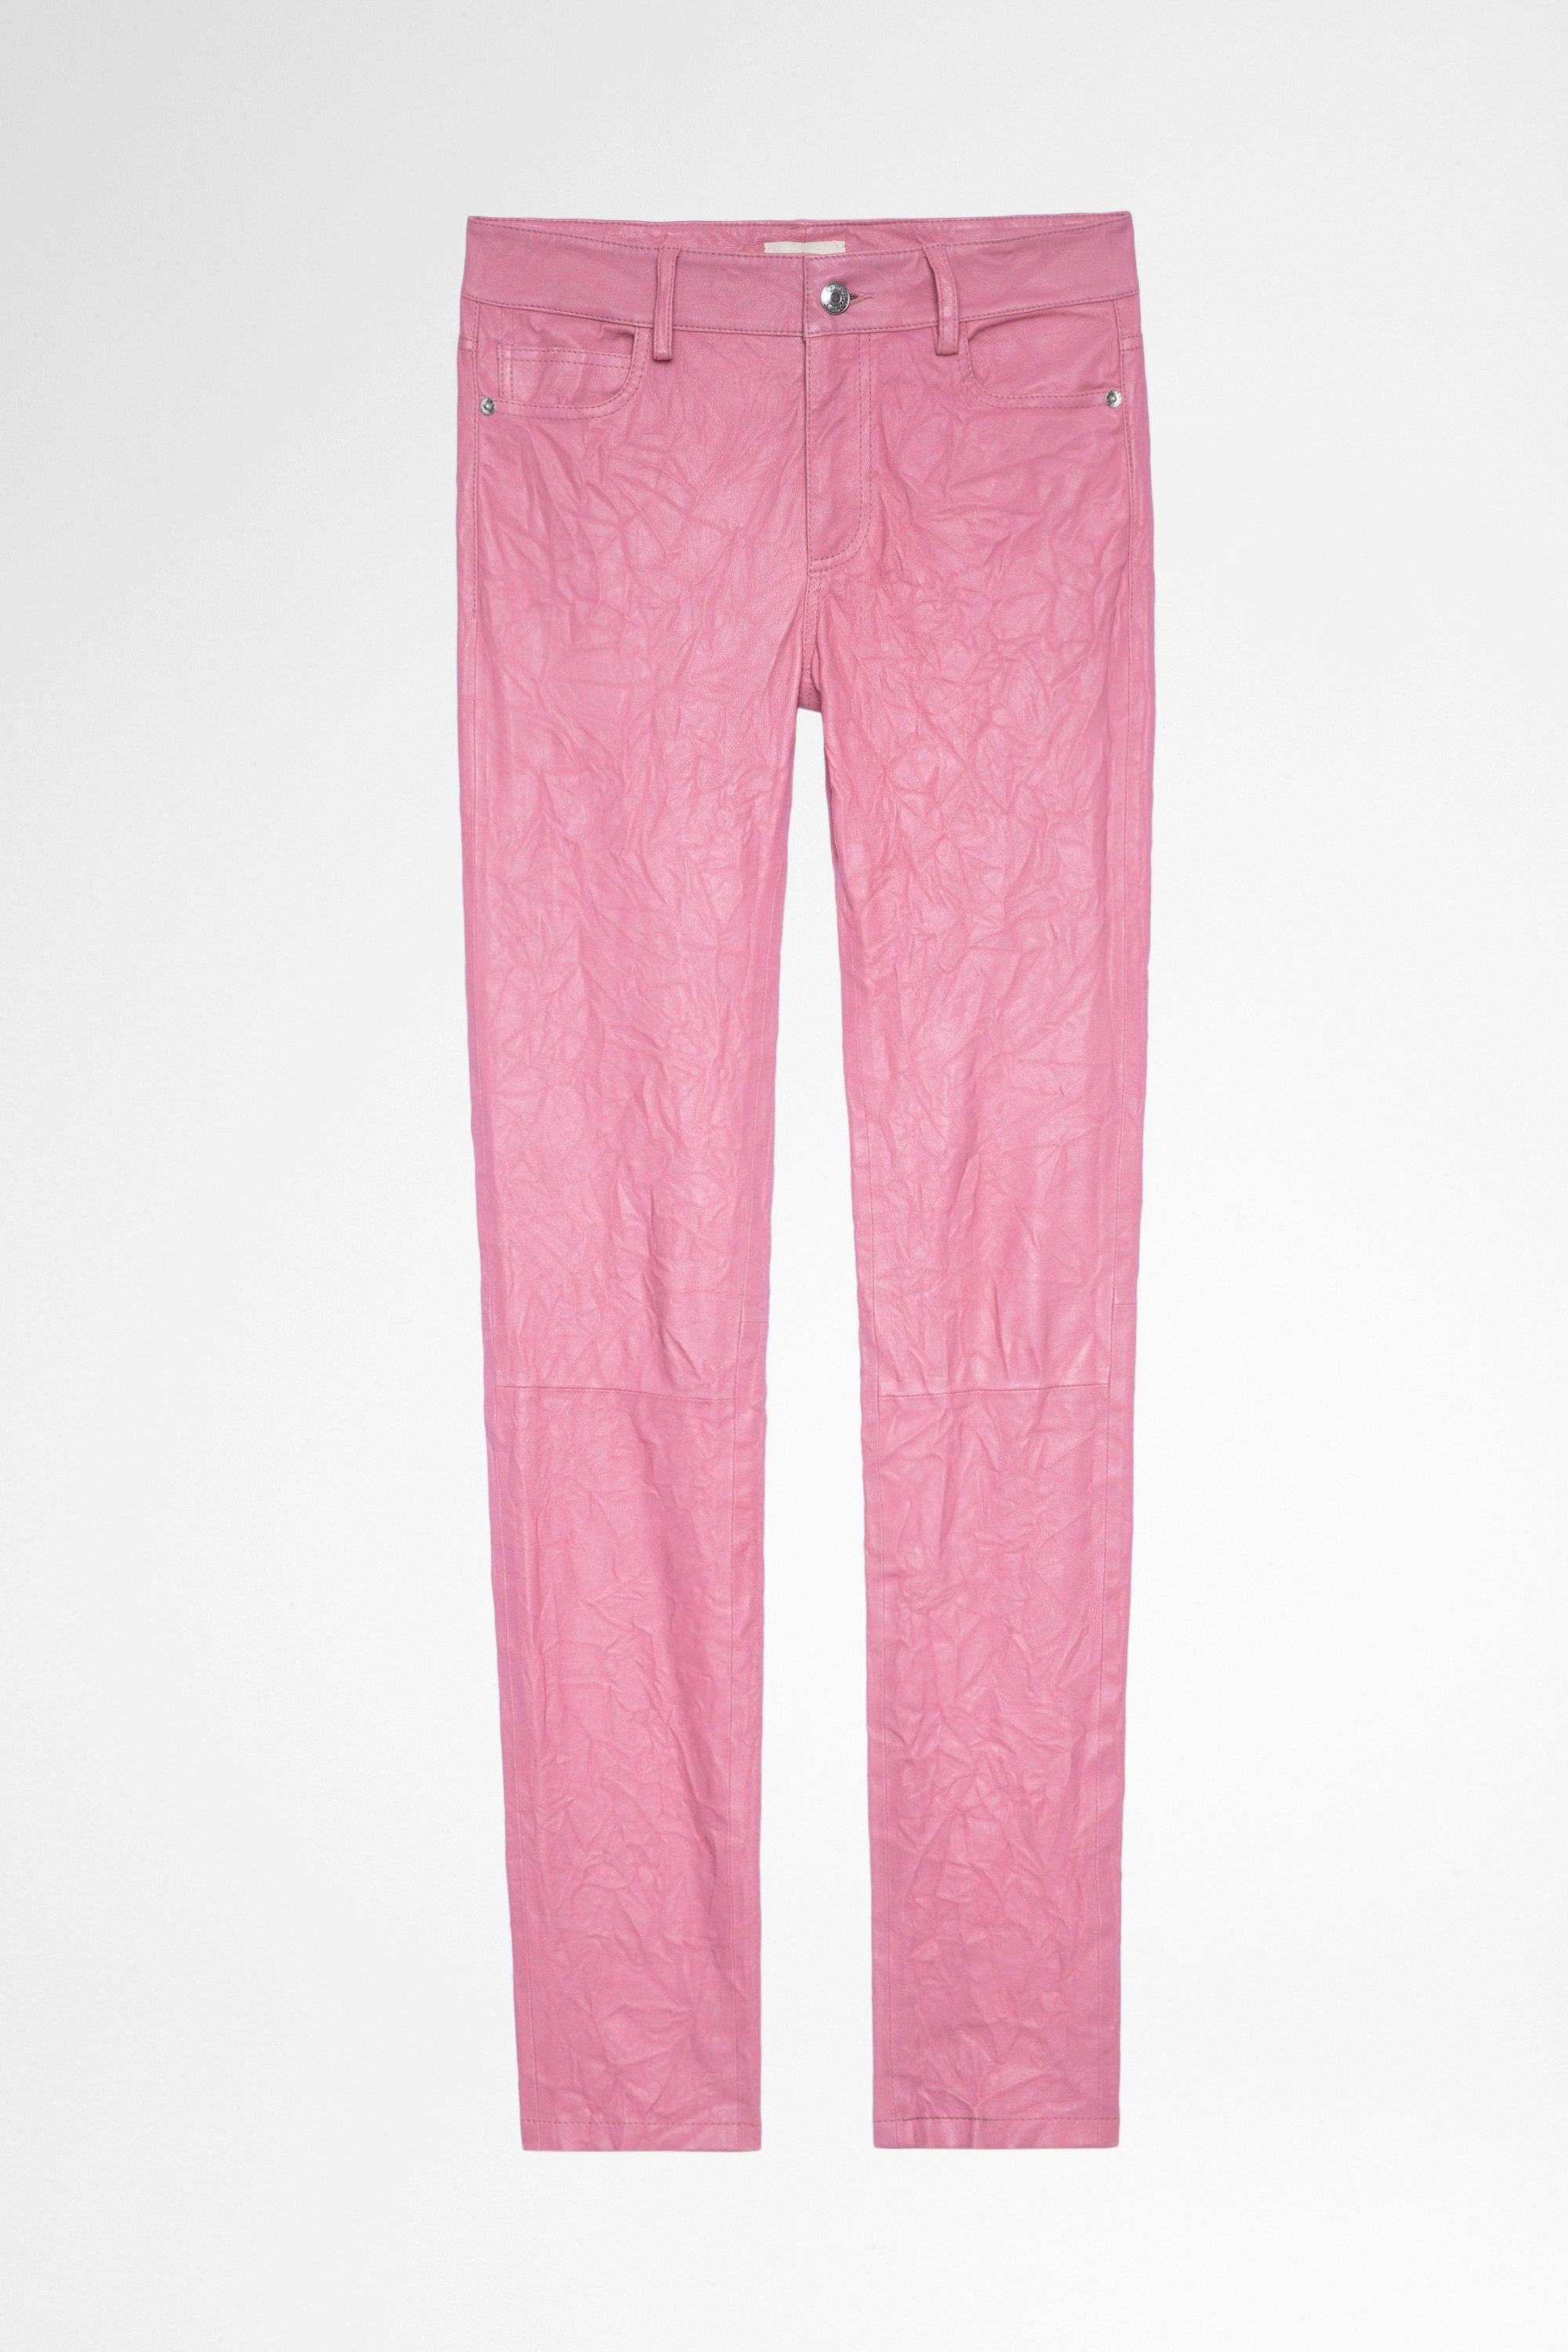 Pantalón de piel con efecto arrugado Phlame Pantalón de mujer de piel rosa de efecto arrugado. Al comprar este producto, estás apoyando la producción de cuero responsable a través de Leather Working Group.